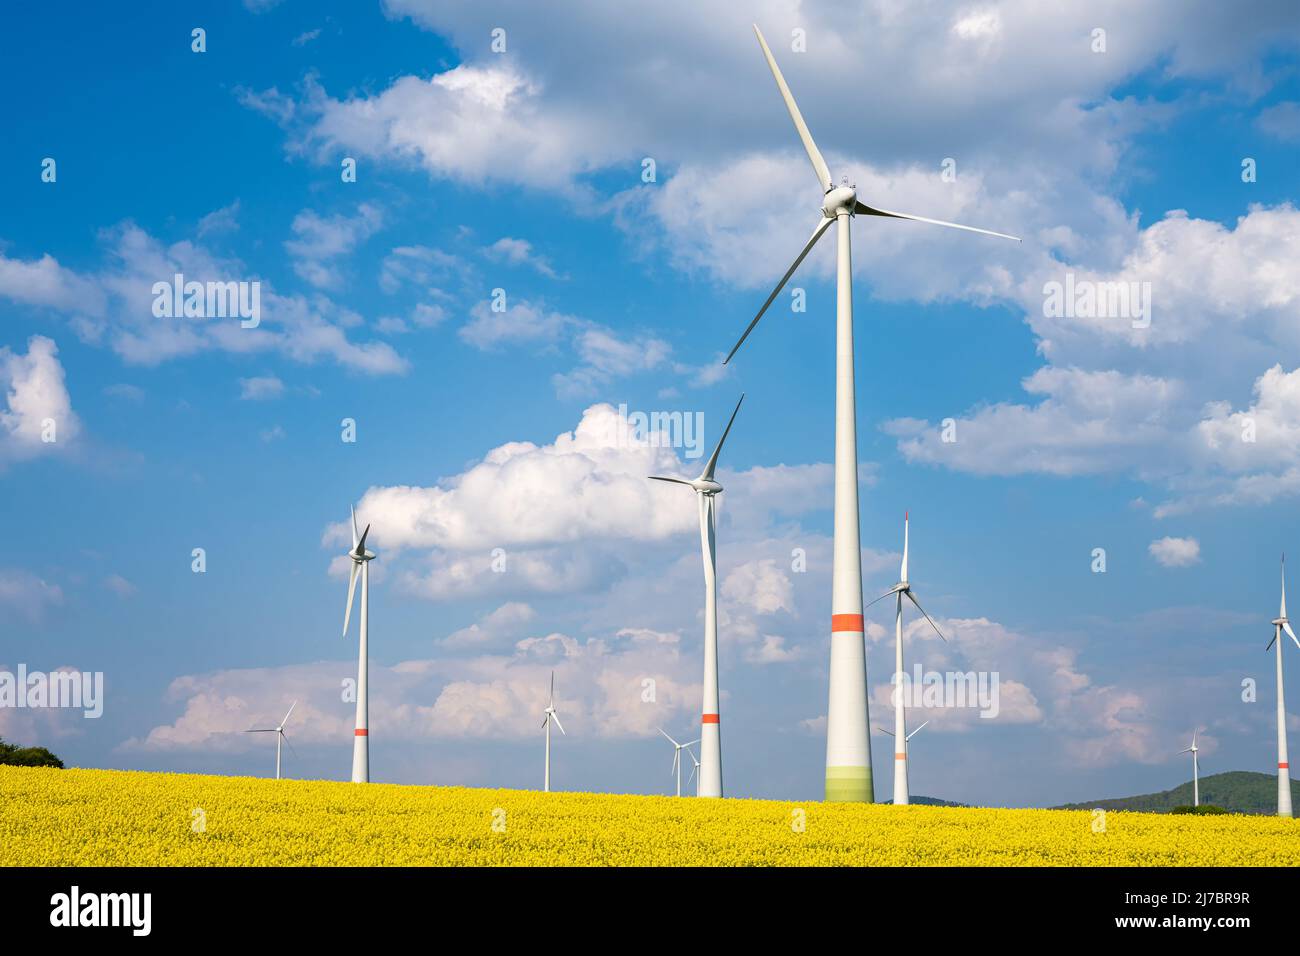 Wind turbines in a blooming rape seed field seen in Germany Stock Photo